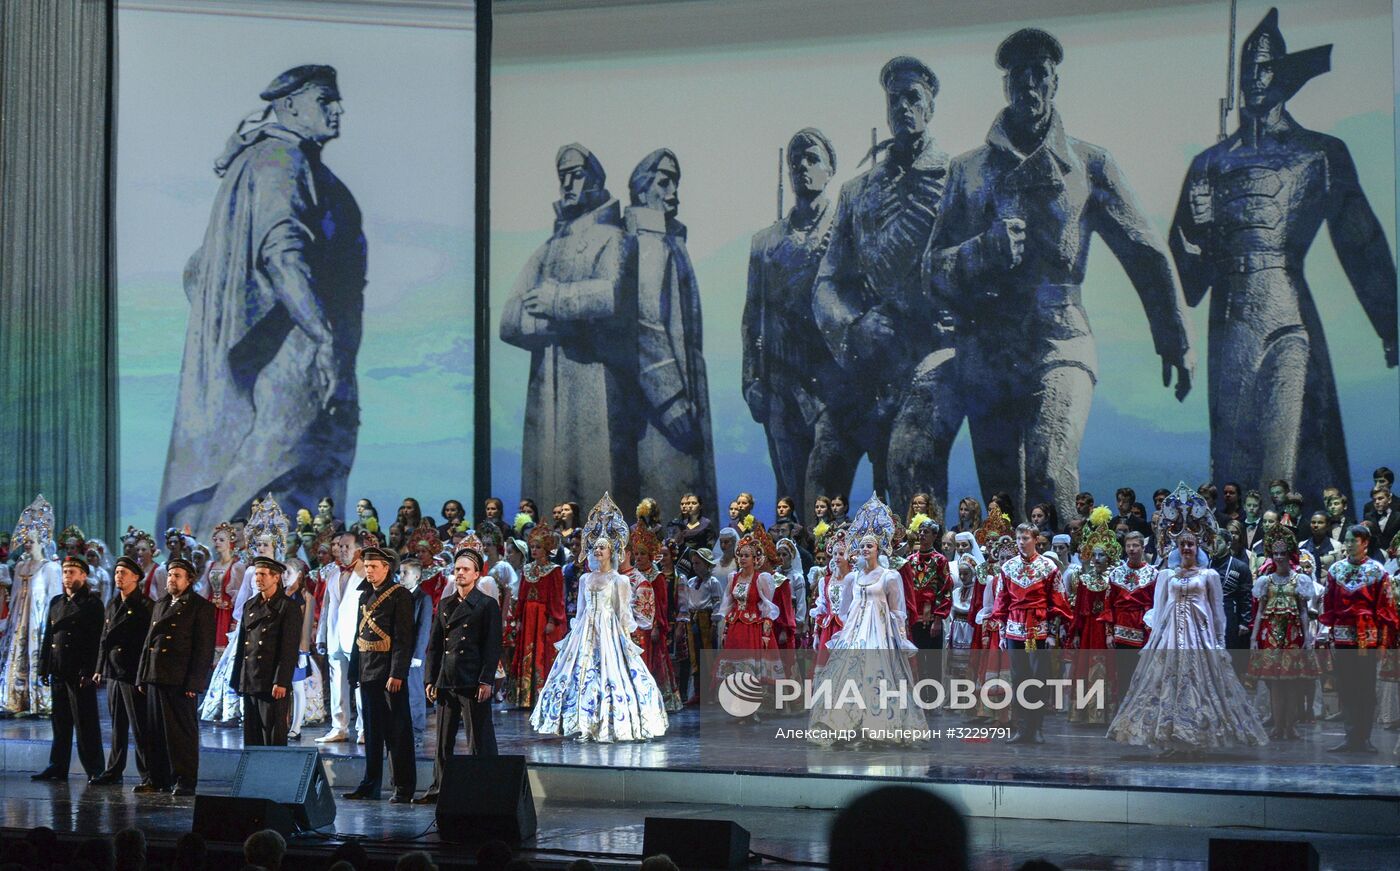 Театрализованное представление "Набат революции" в Санкт-Петербурге